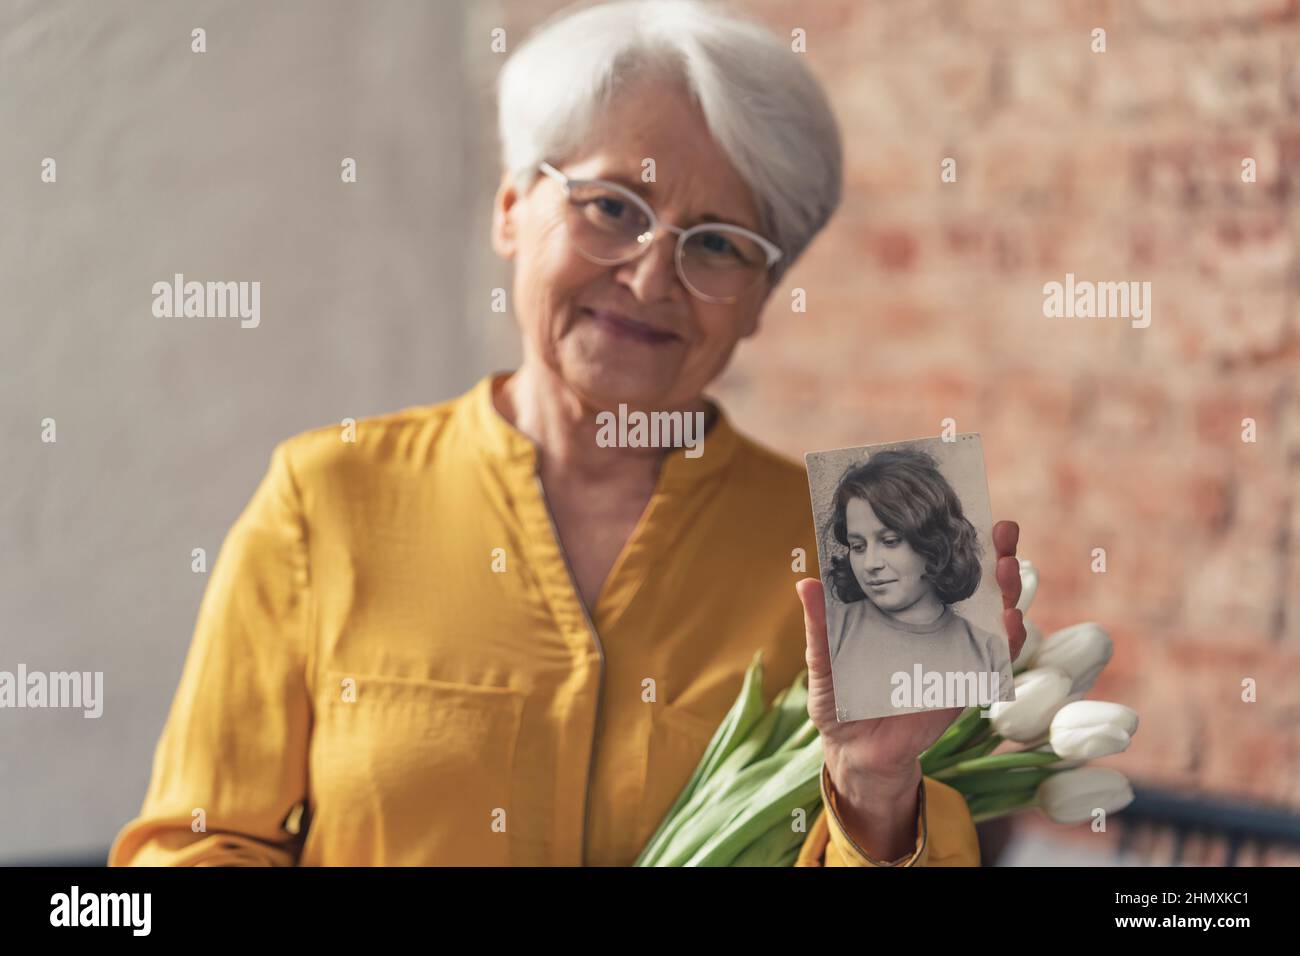 donna più anziana in pensione caucasica che tiene un mazzo di fiori bianchi e un ritratto bianco e nero dal suo passato. Foto di alta qualità Foto Stock